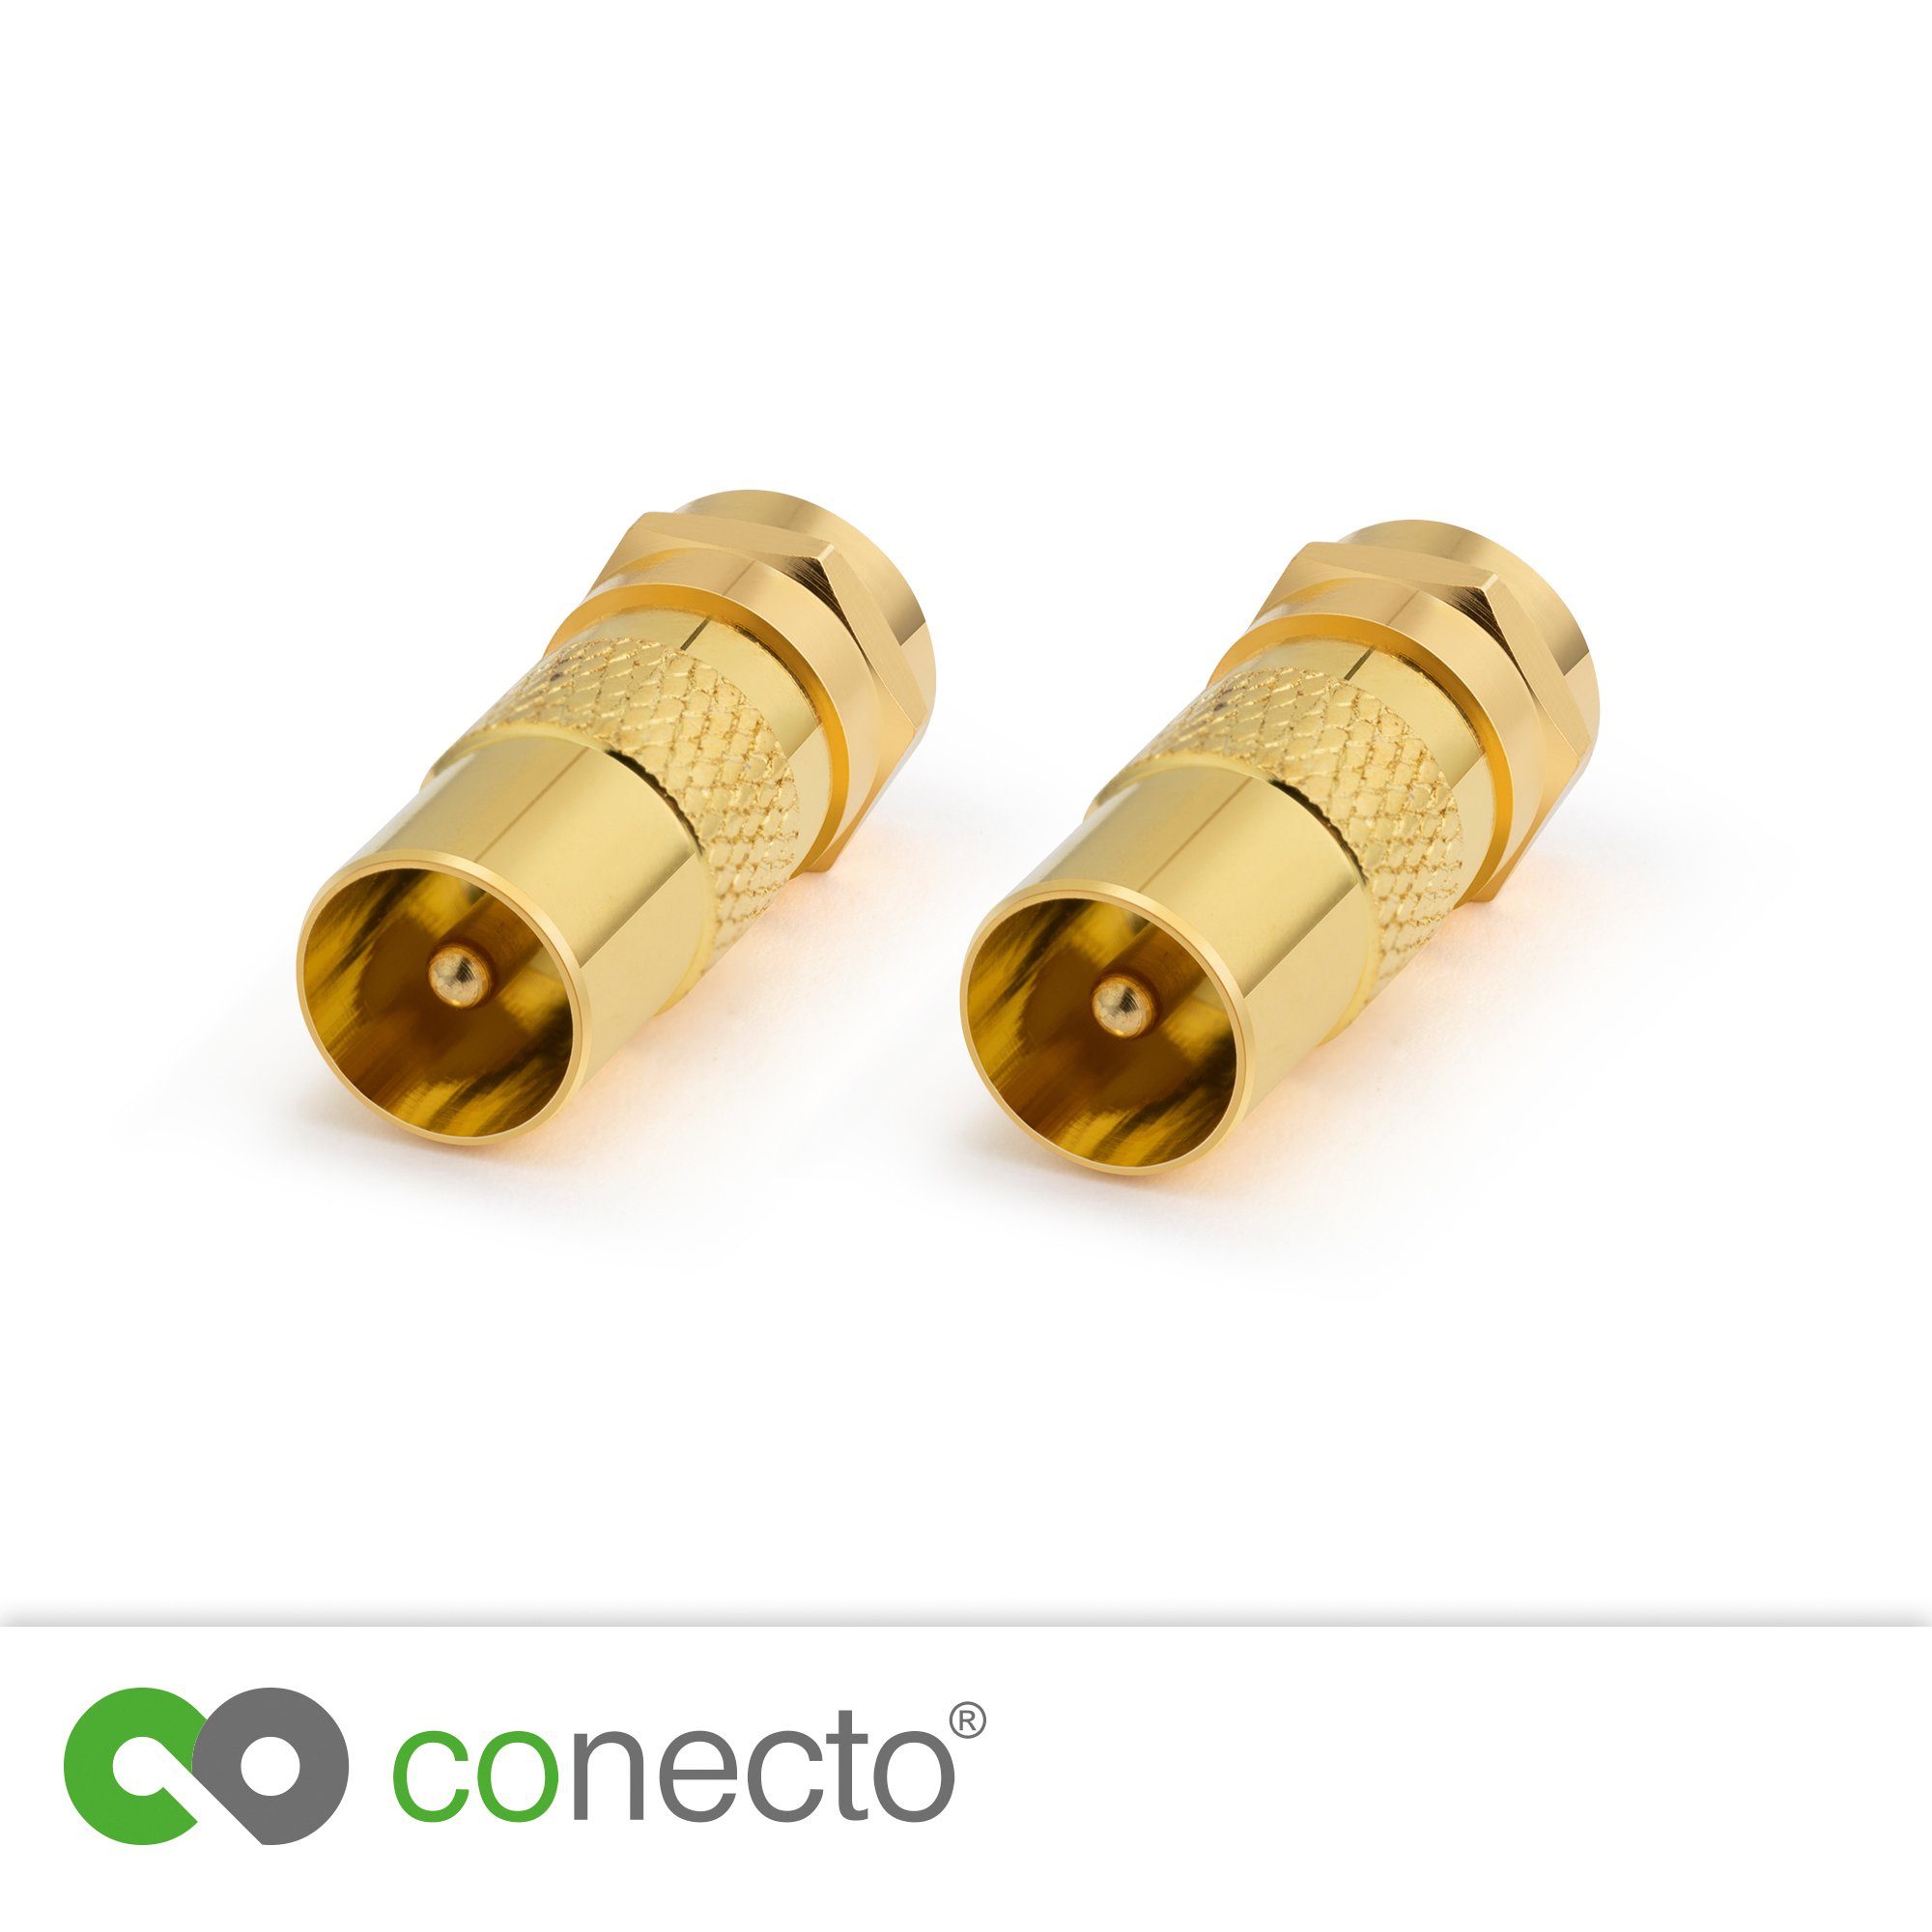 conecto Adapter auf F-Stecker IEC-Buchse, conecto Antennen-Adapter, Verbin SAT-Kabel zum